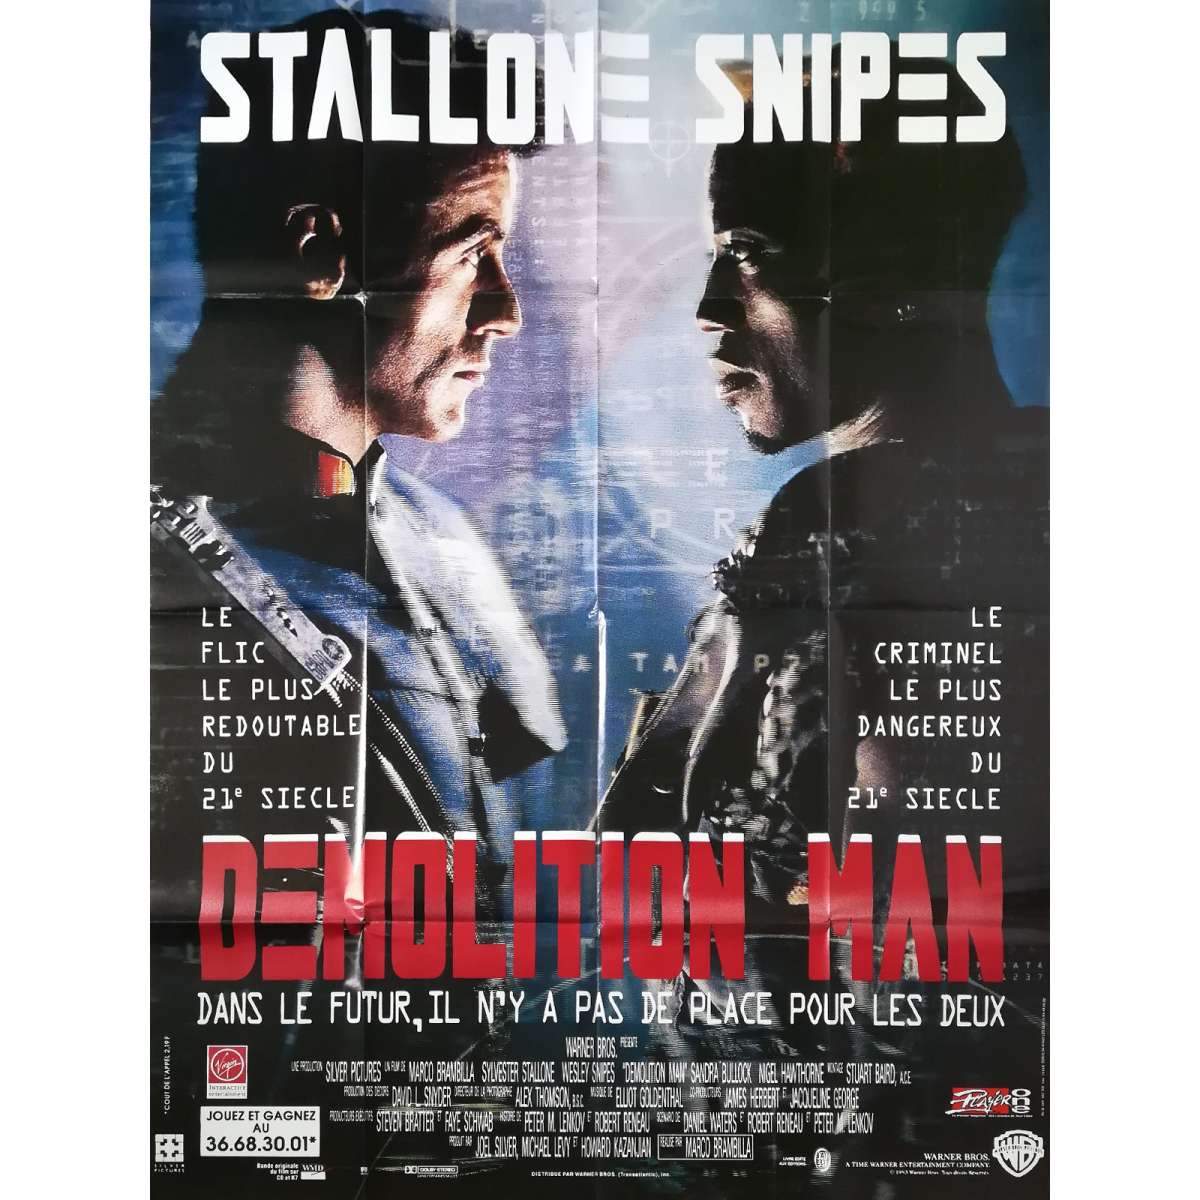 download the movie demolition man